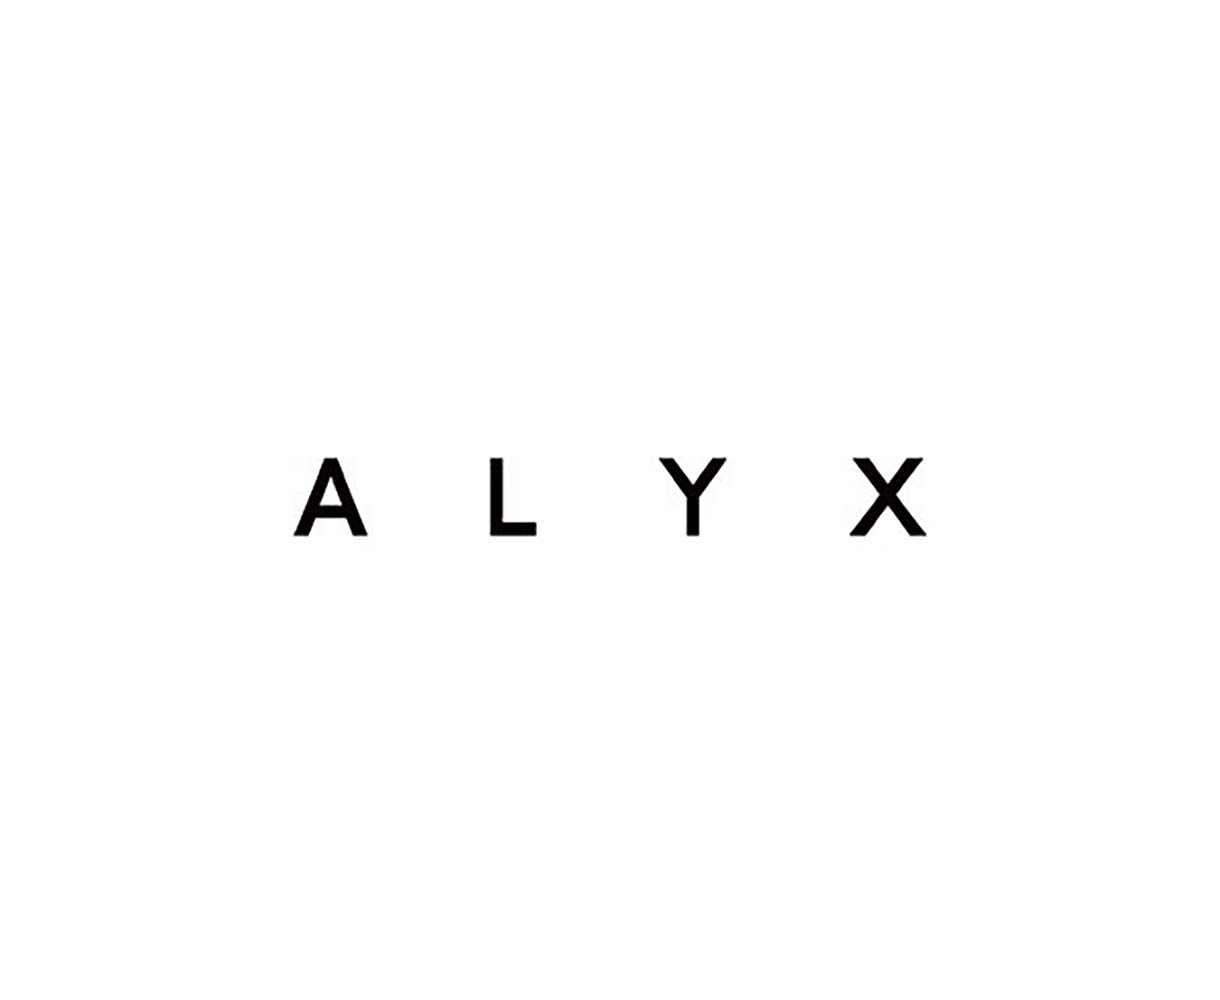 Alyx by Uber & Kosher